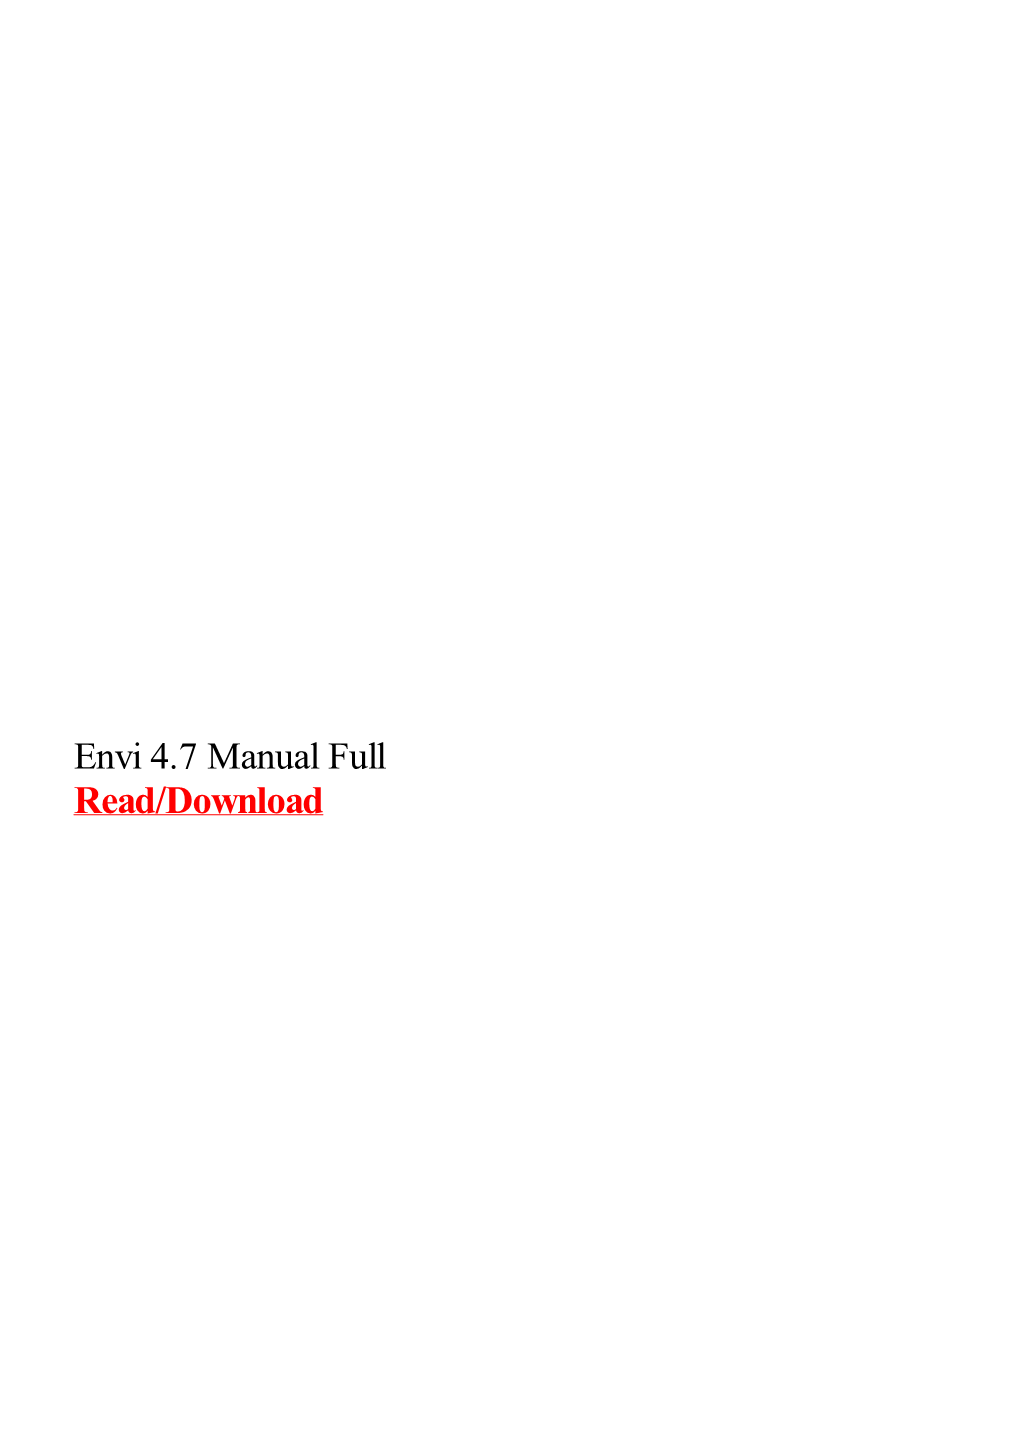 Envi 4.7 Manual Full